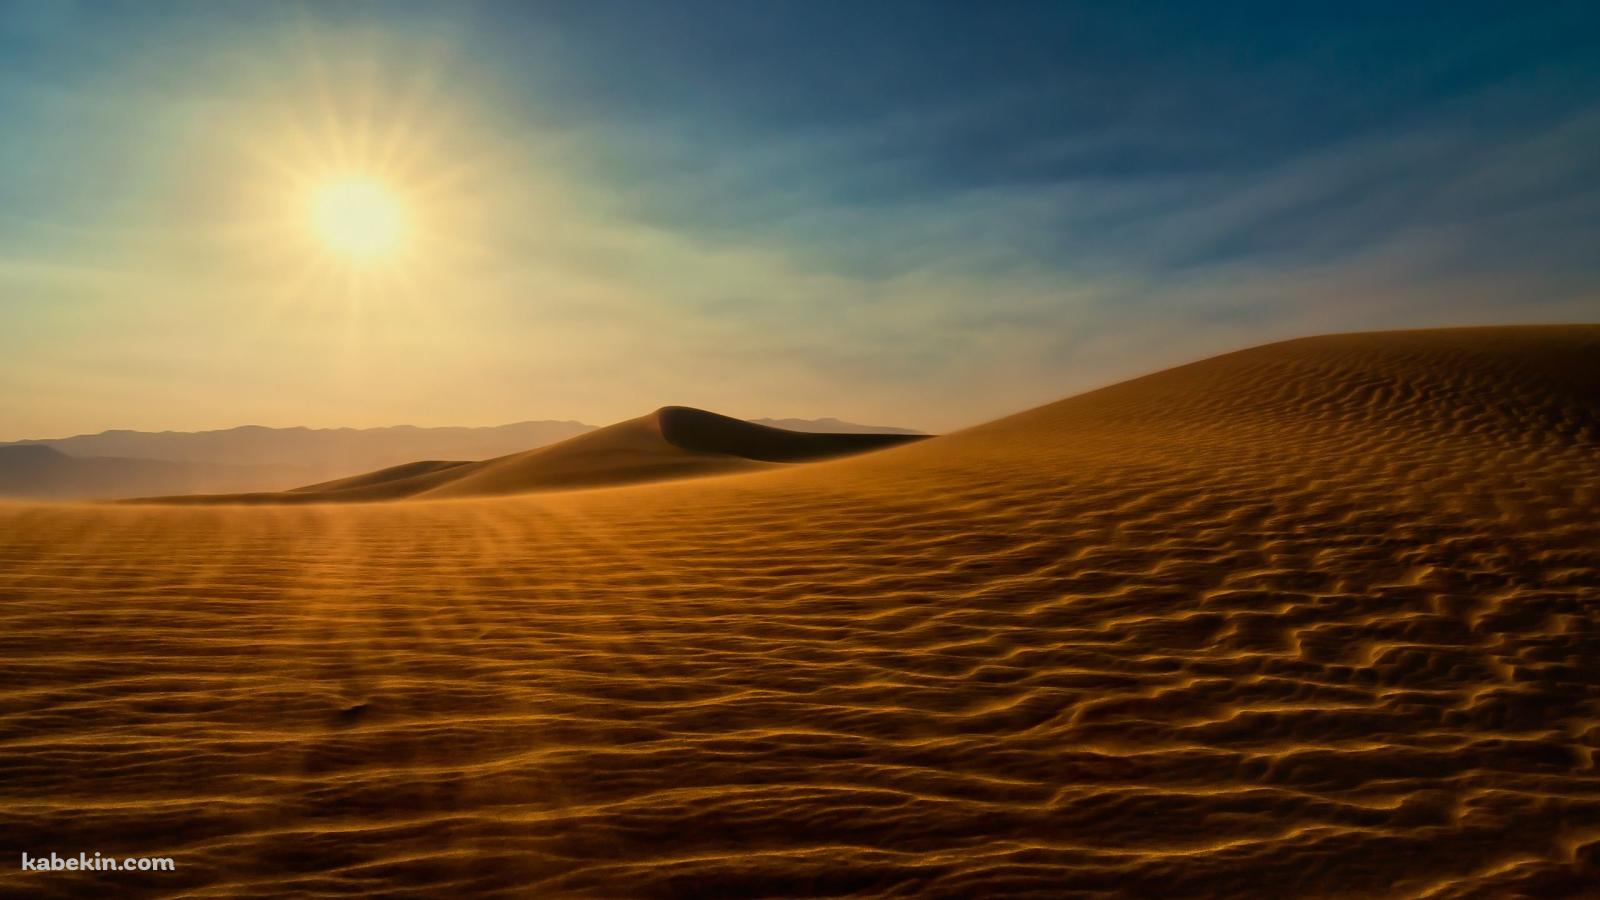 砂漠と太陽の壁紙(1600px x 900px) 高画質 PC・デスクトップ用